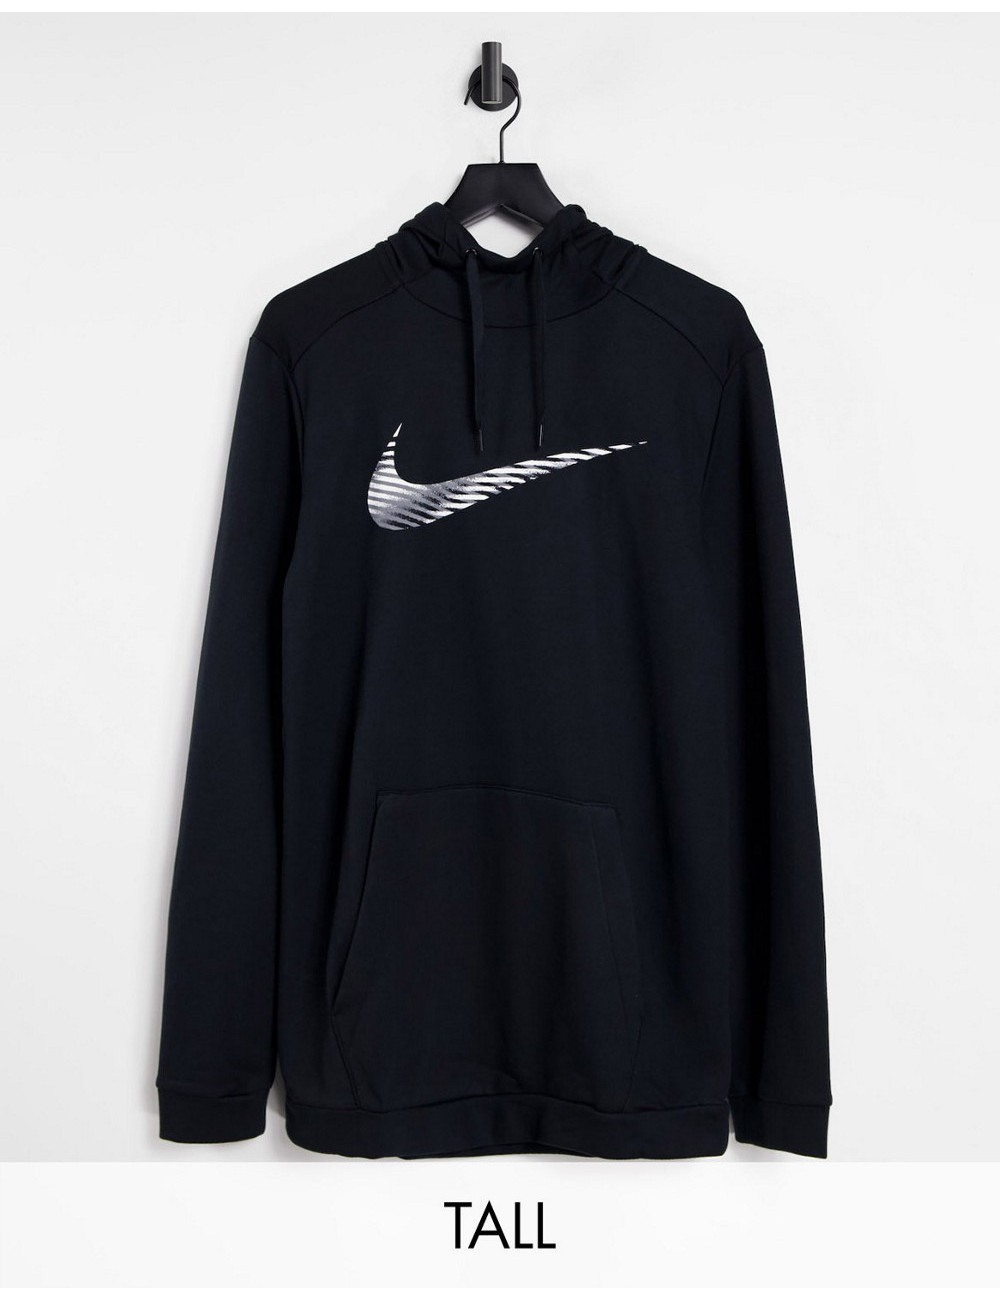 Nike Dri-FIT hoodie in black